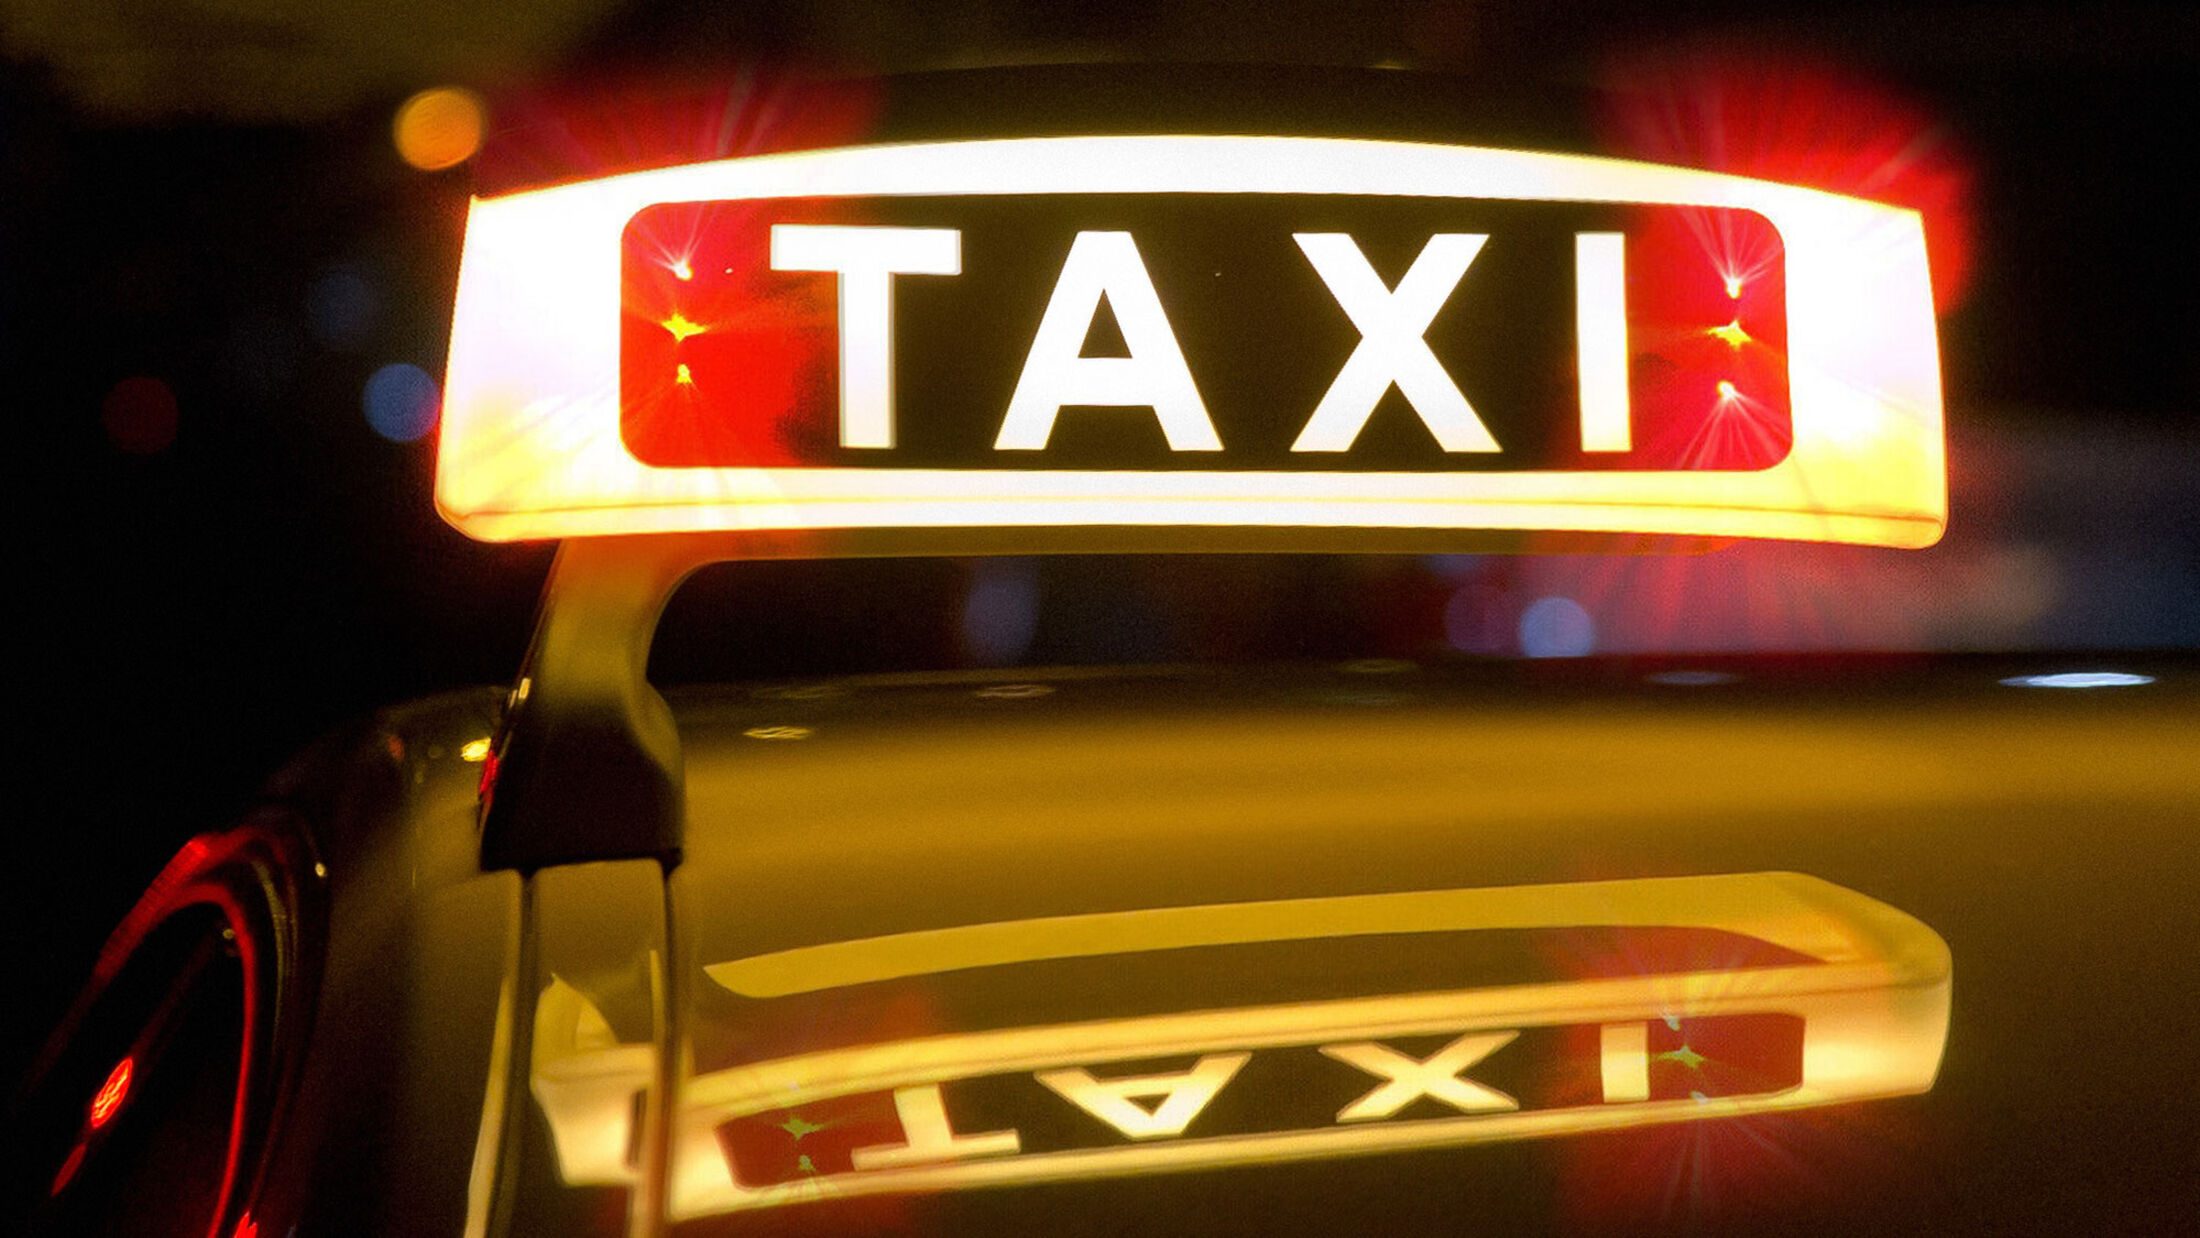 Stiller Taxi-Alarm: Schnell die Polizei rufen